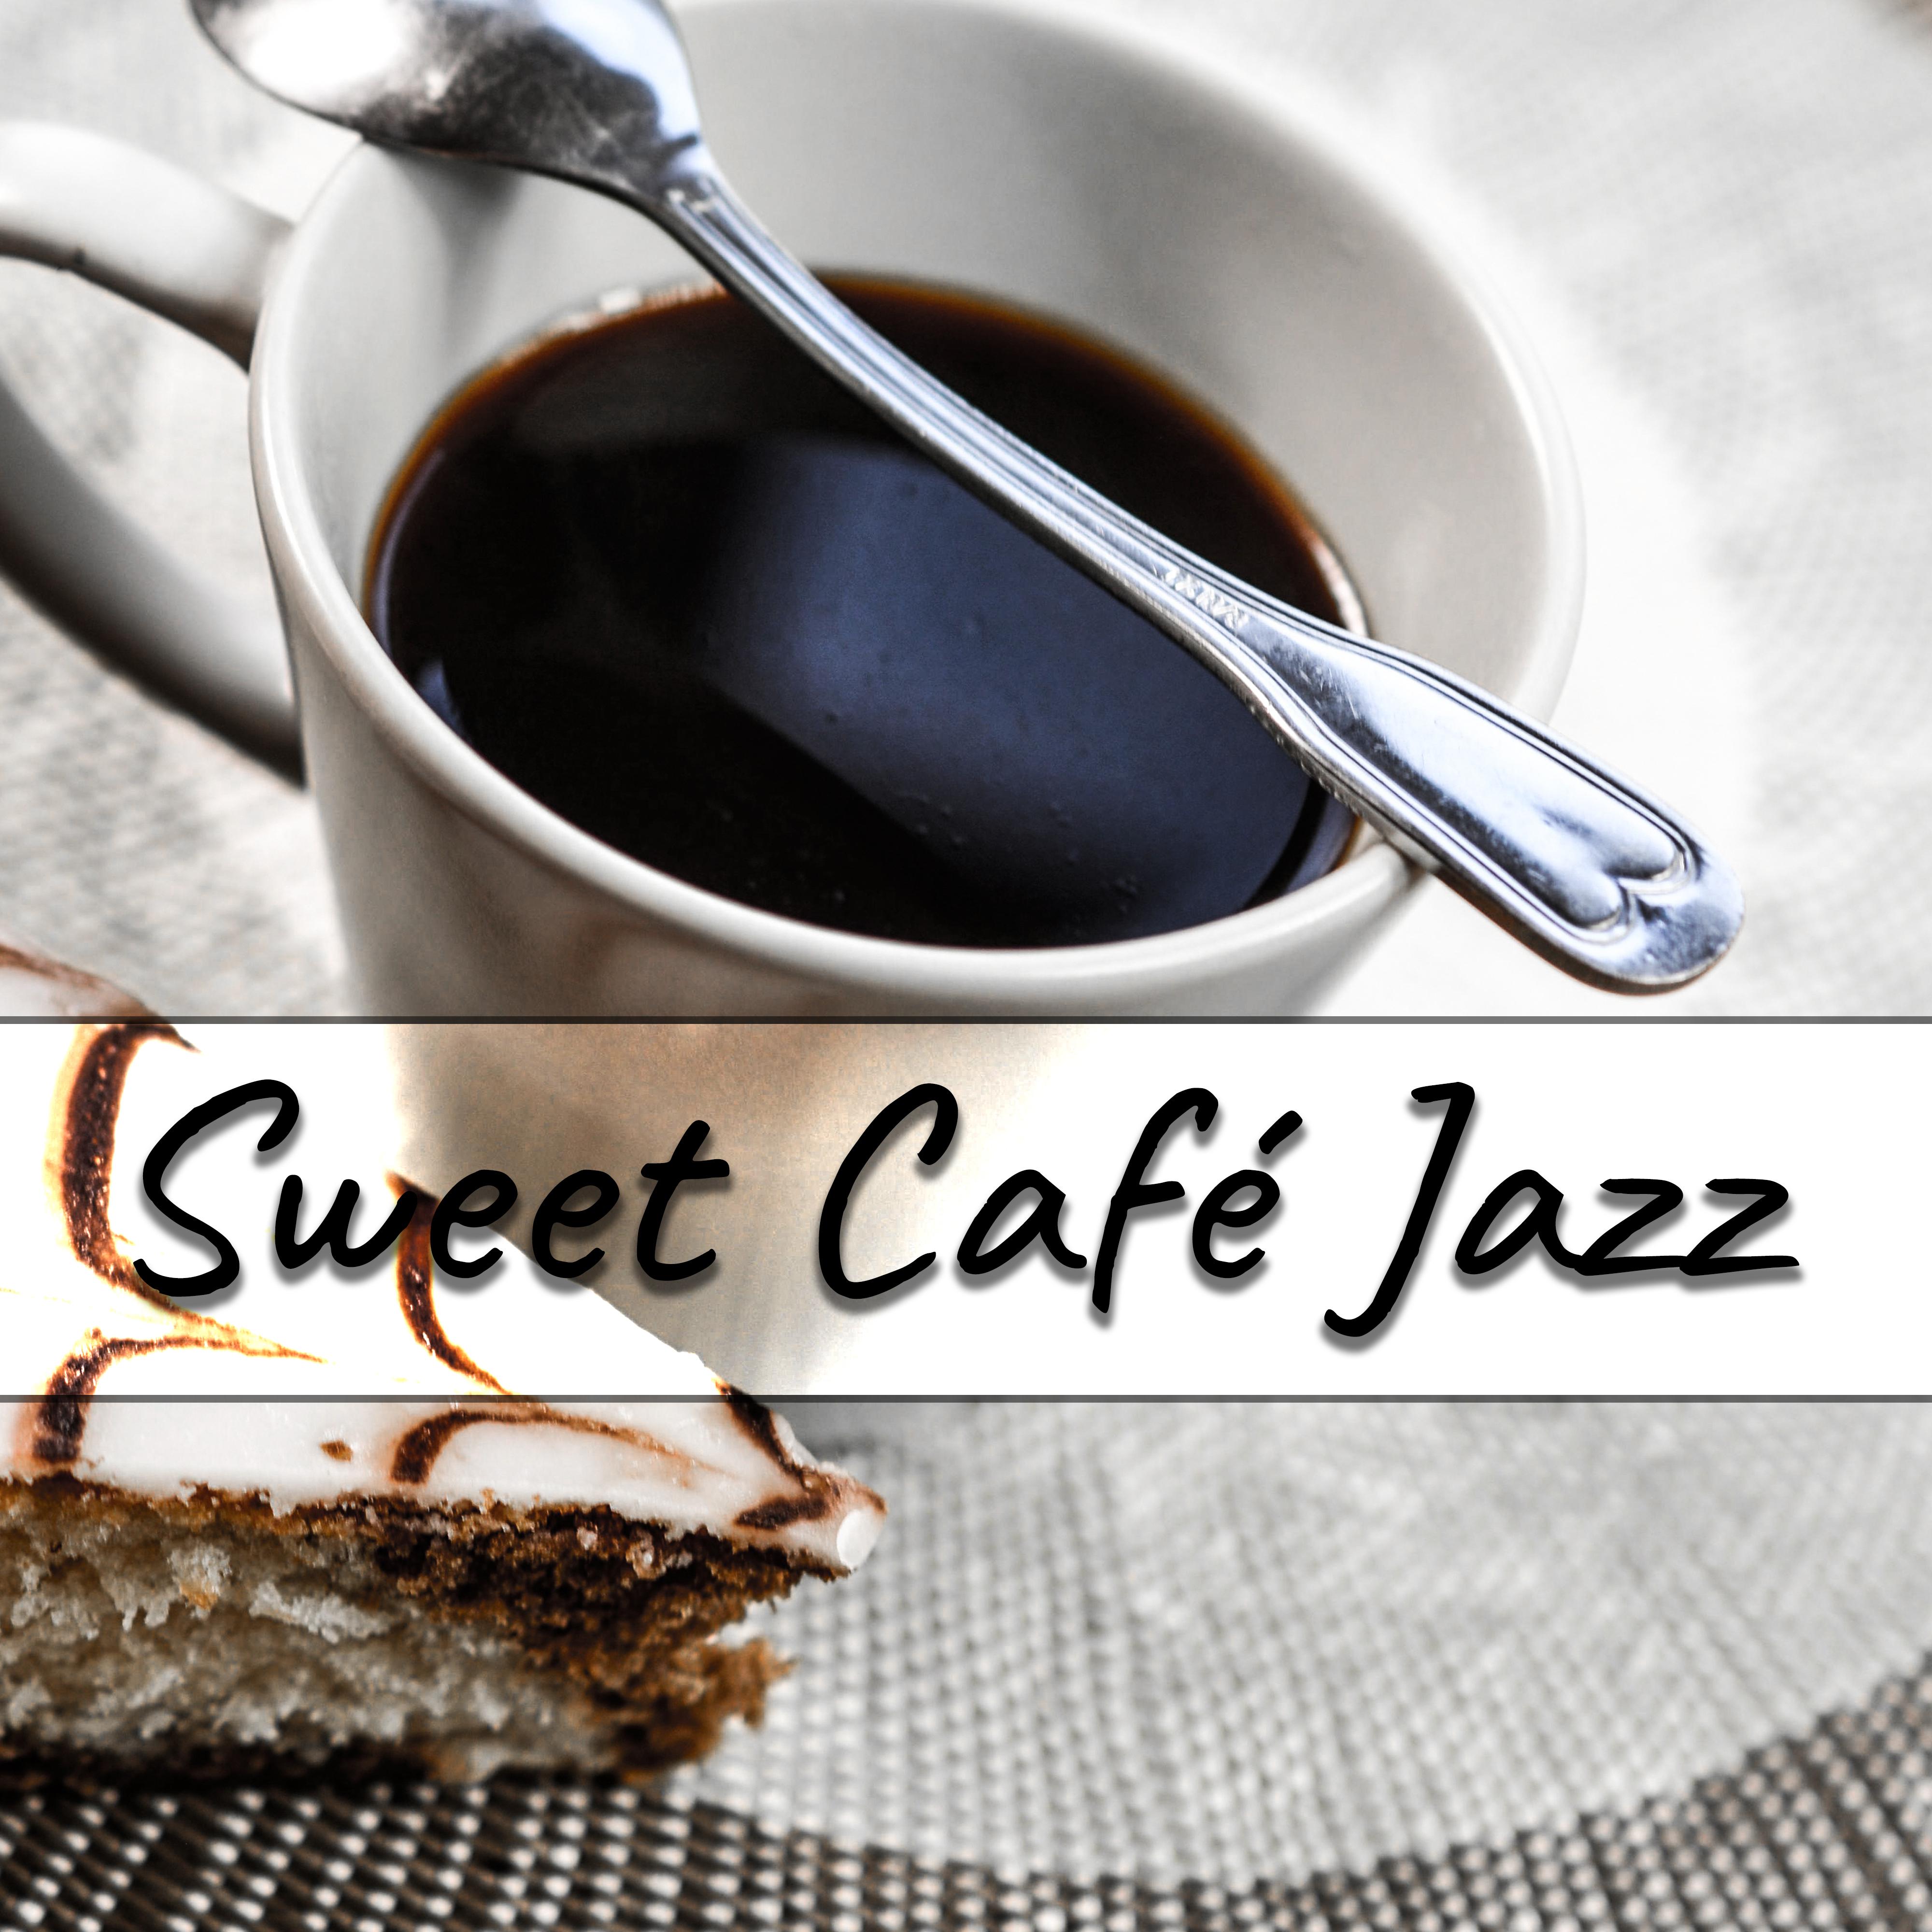 Sweet Cafe Jazz  Instrumental Music, Romantic Jazz, Paris Cafe, Simple Piano